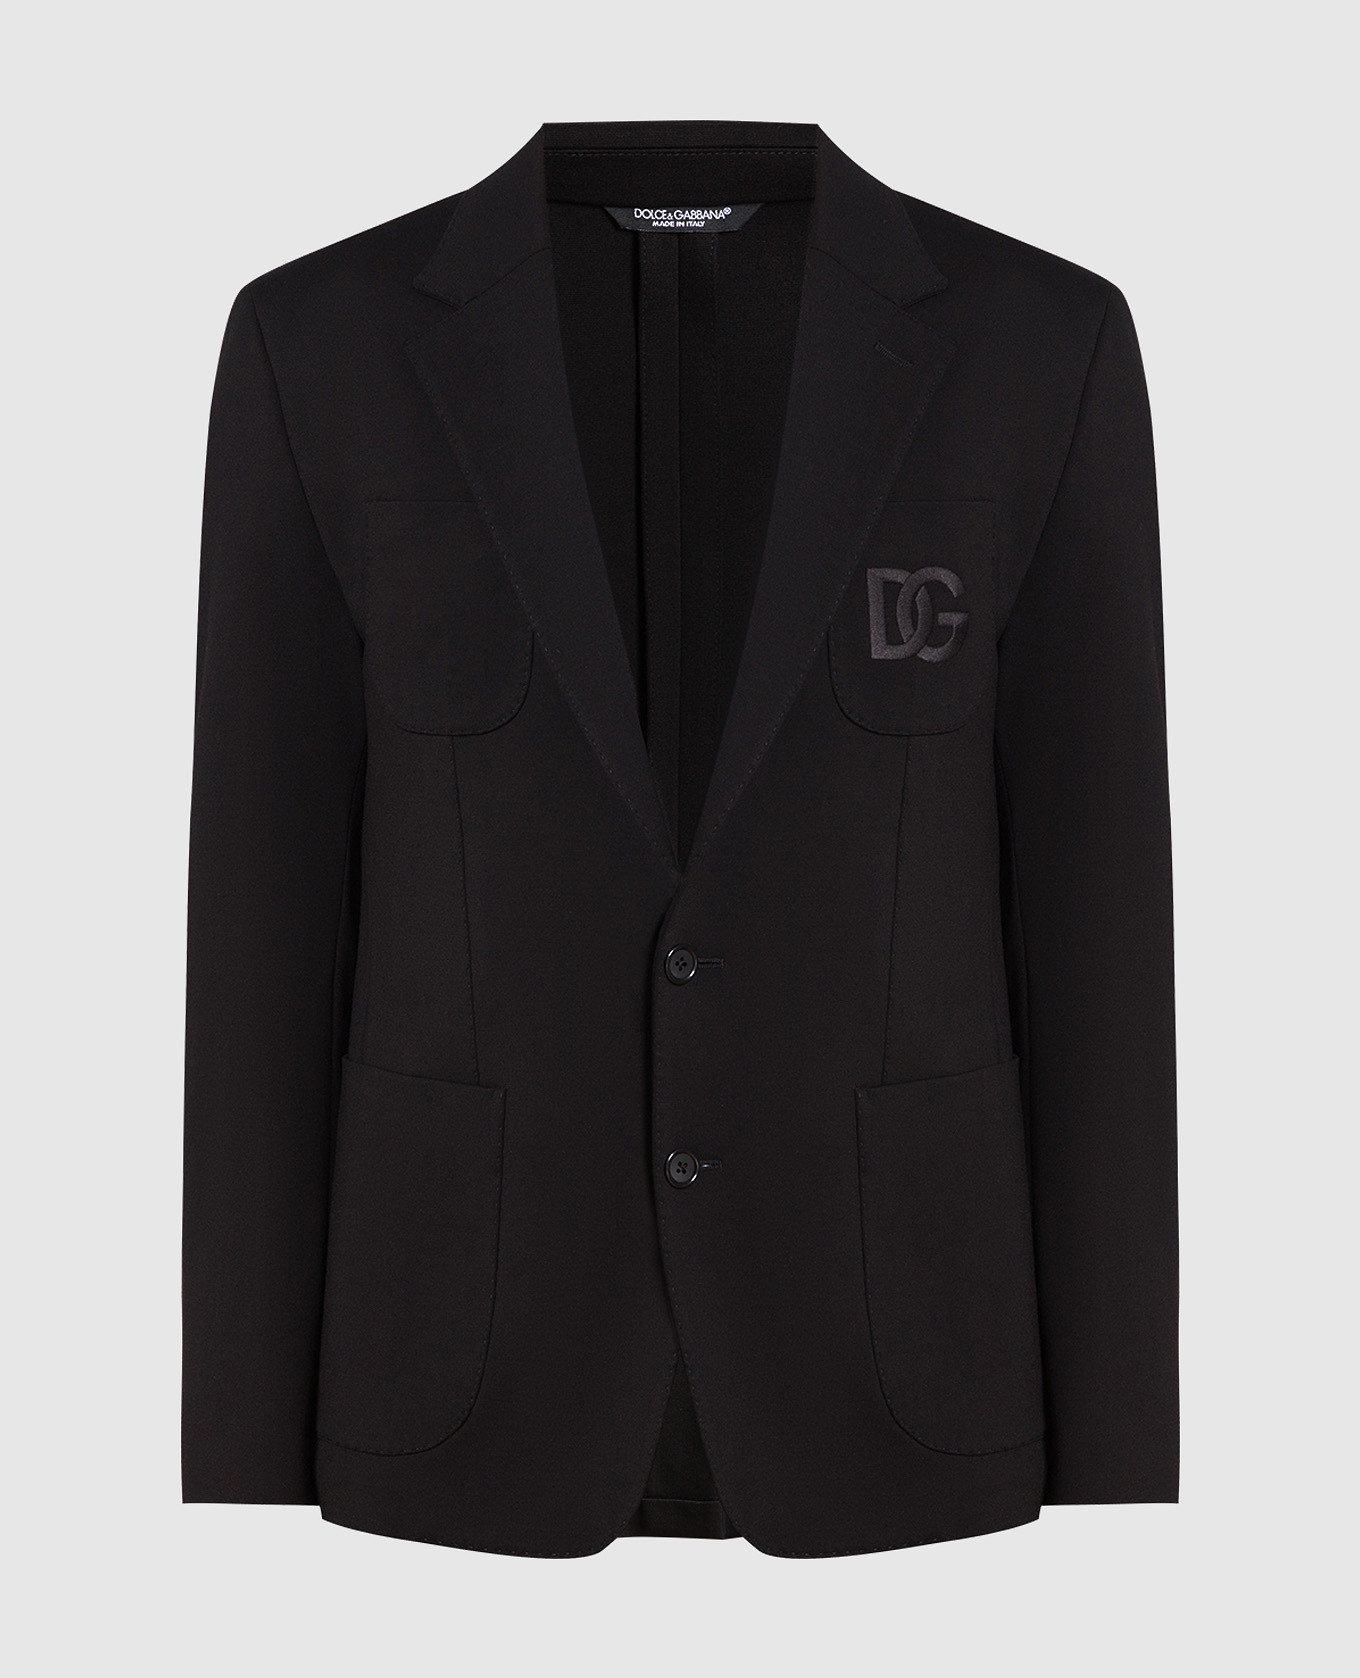 Чорний блейзер з вишивкою логотипу DG